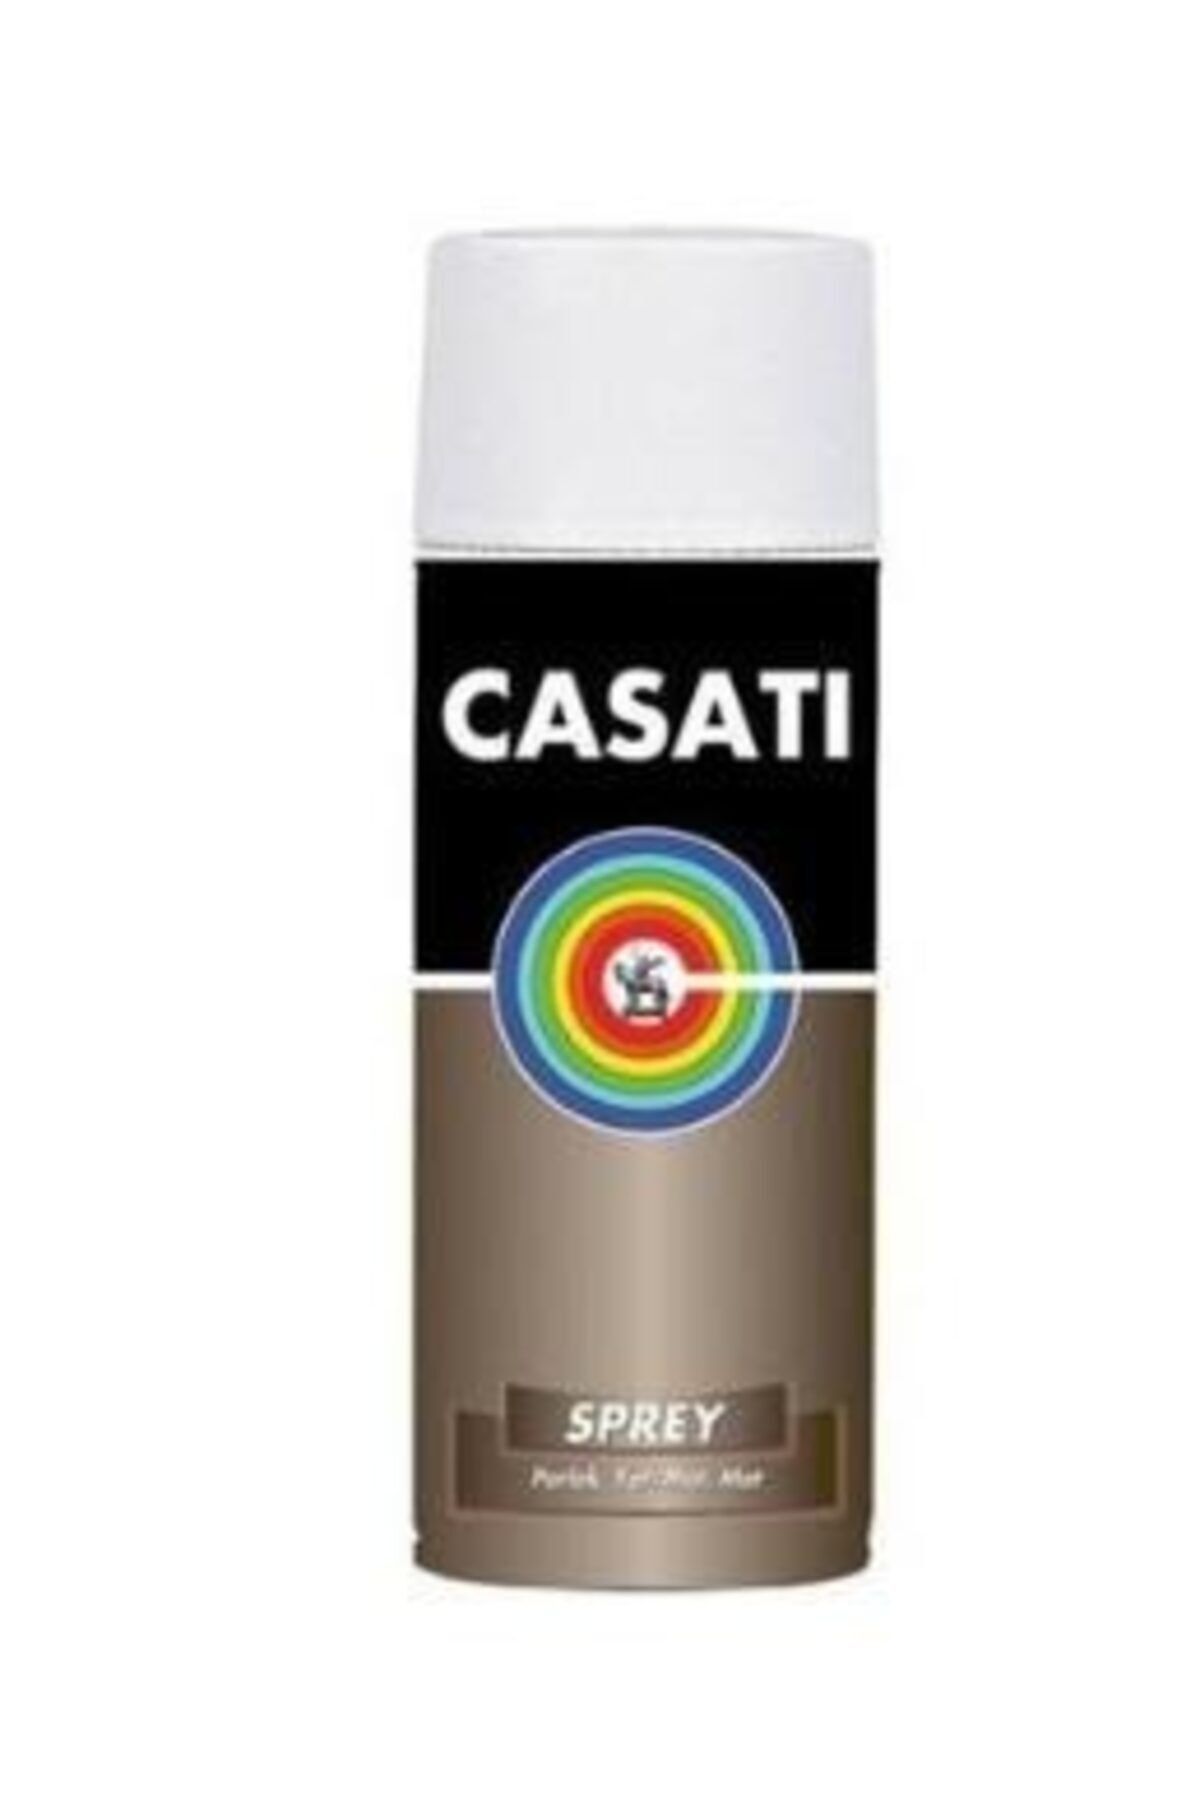 Casati Sprey Boya 400ml - Metalik/floresan Renkler Metaliksarı